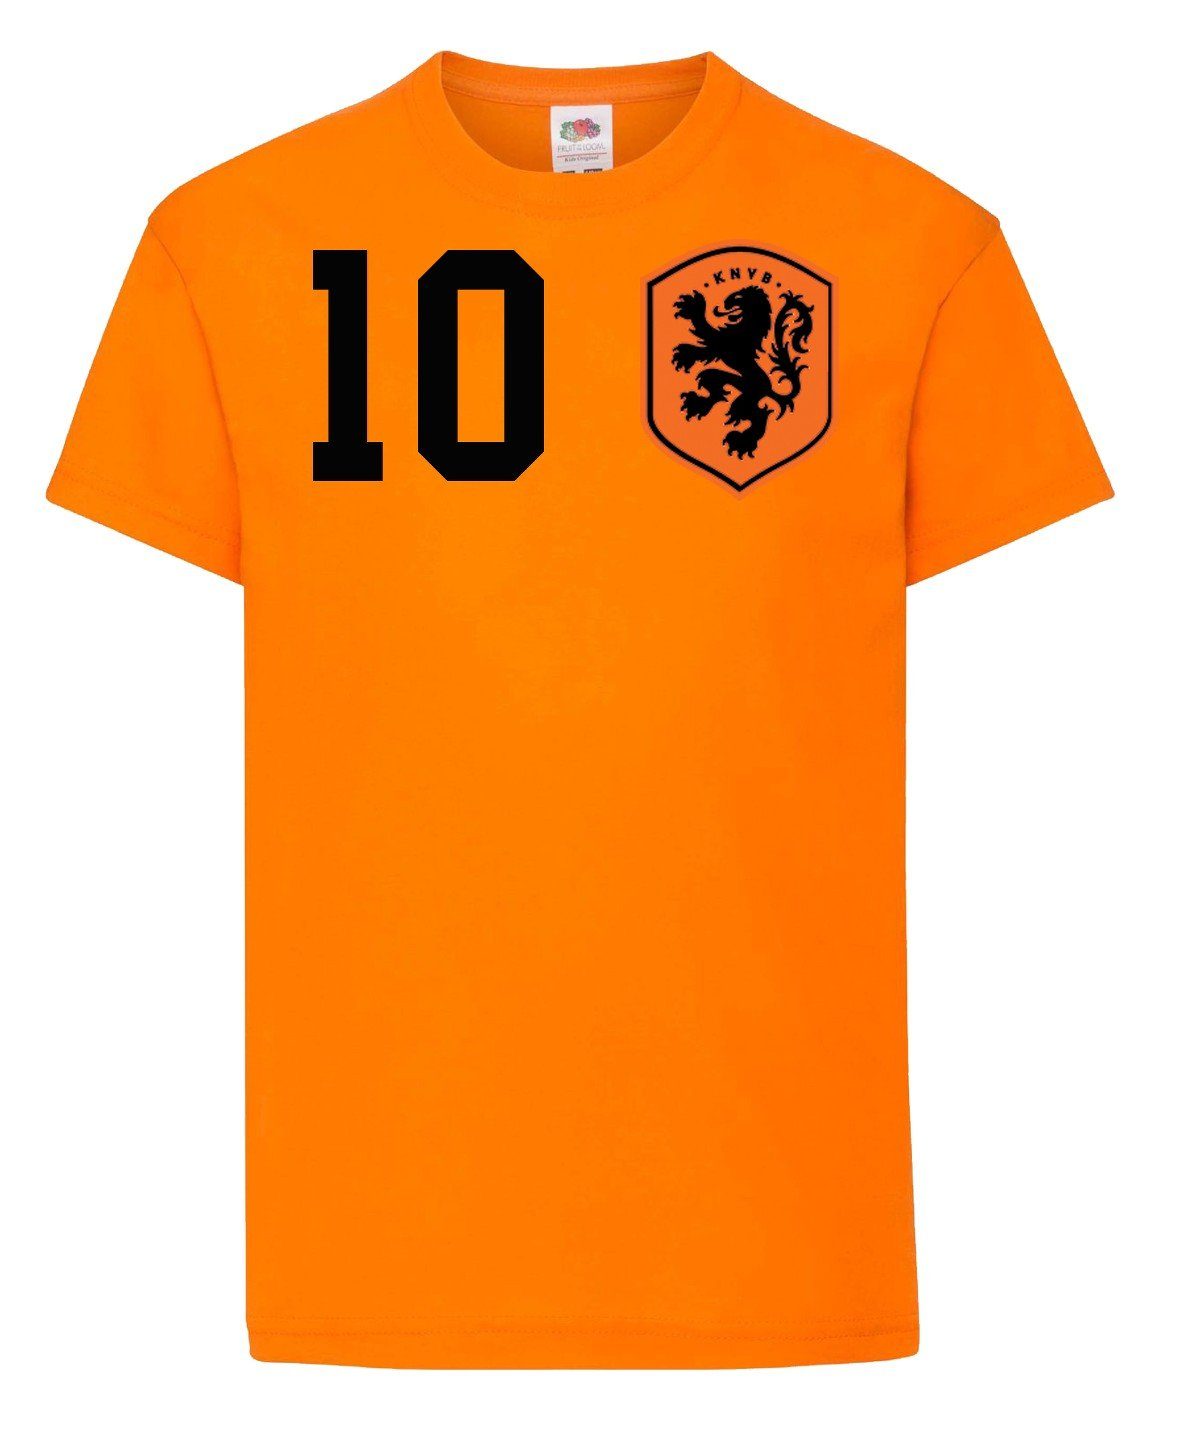 Trikot im T-Shirt Print Fußball mit T-Shirt Look trendigem Kinder Designz Niederlande Youth